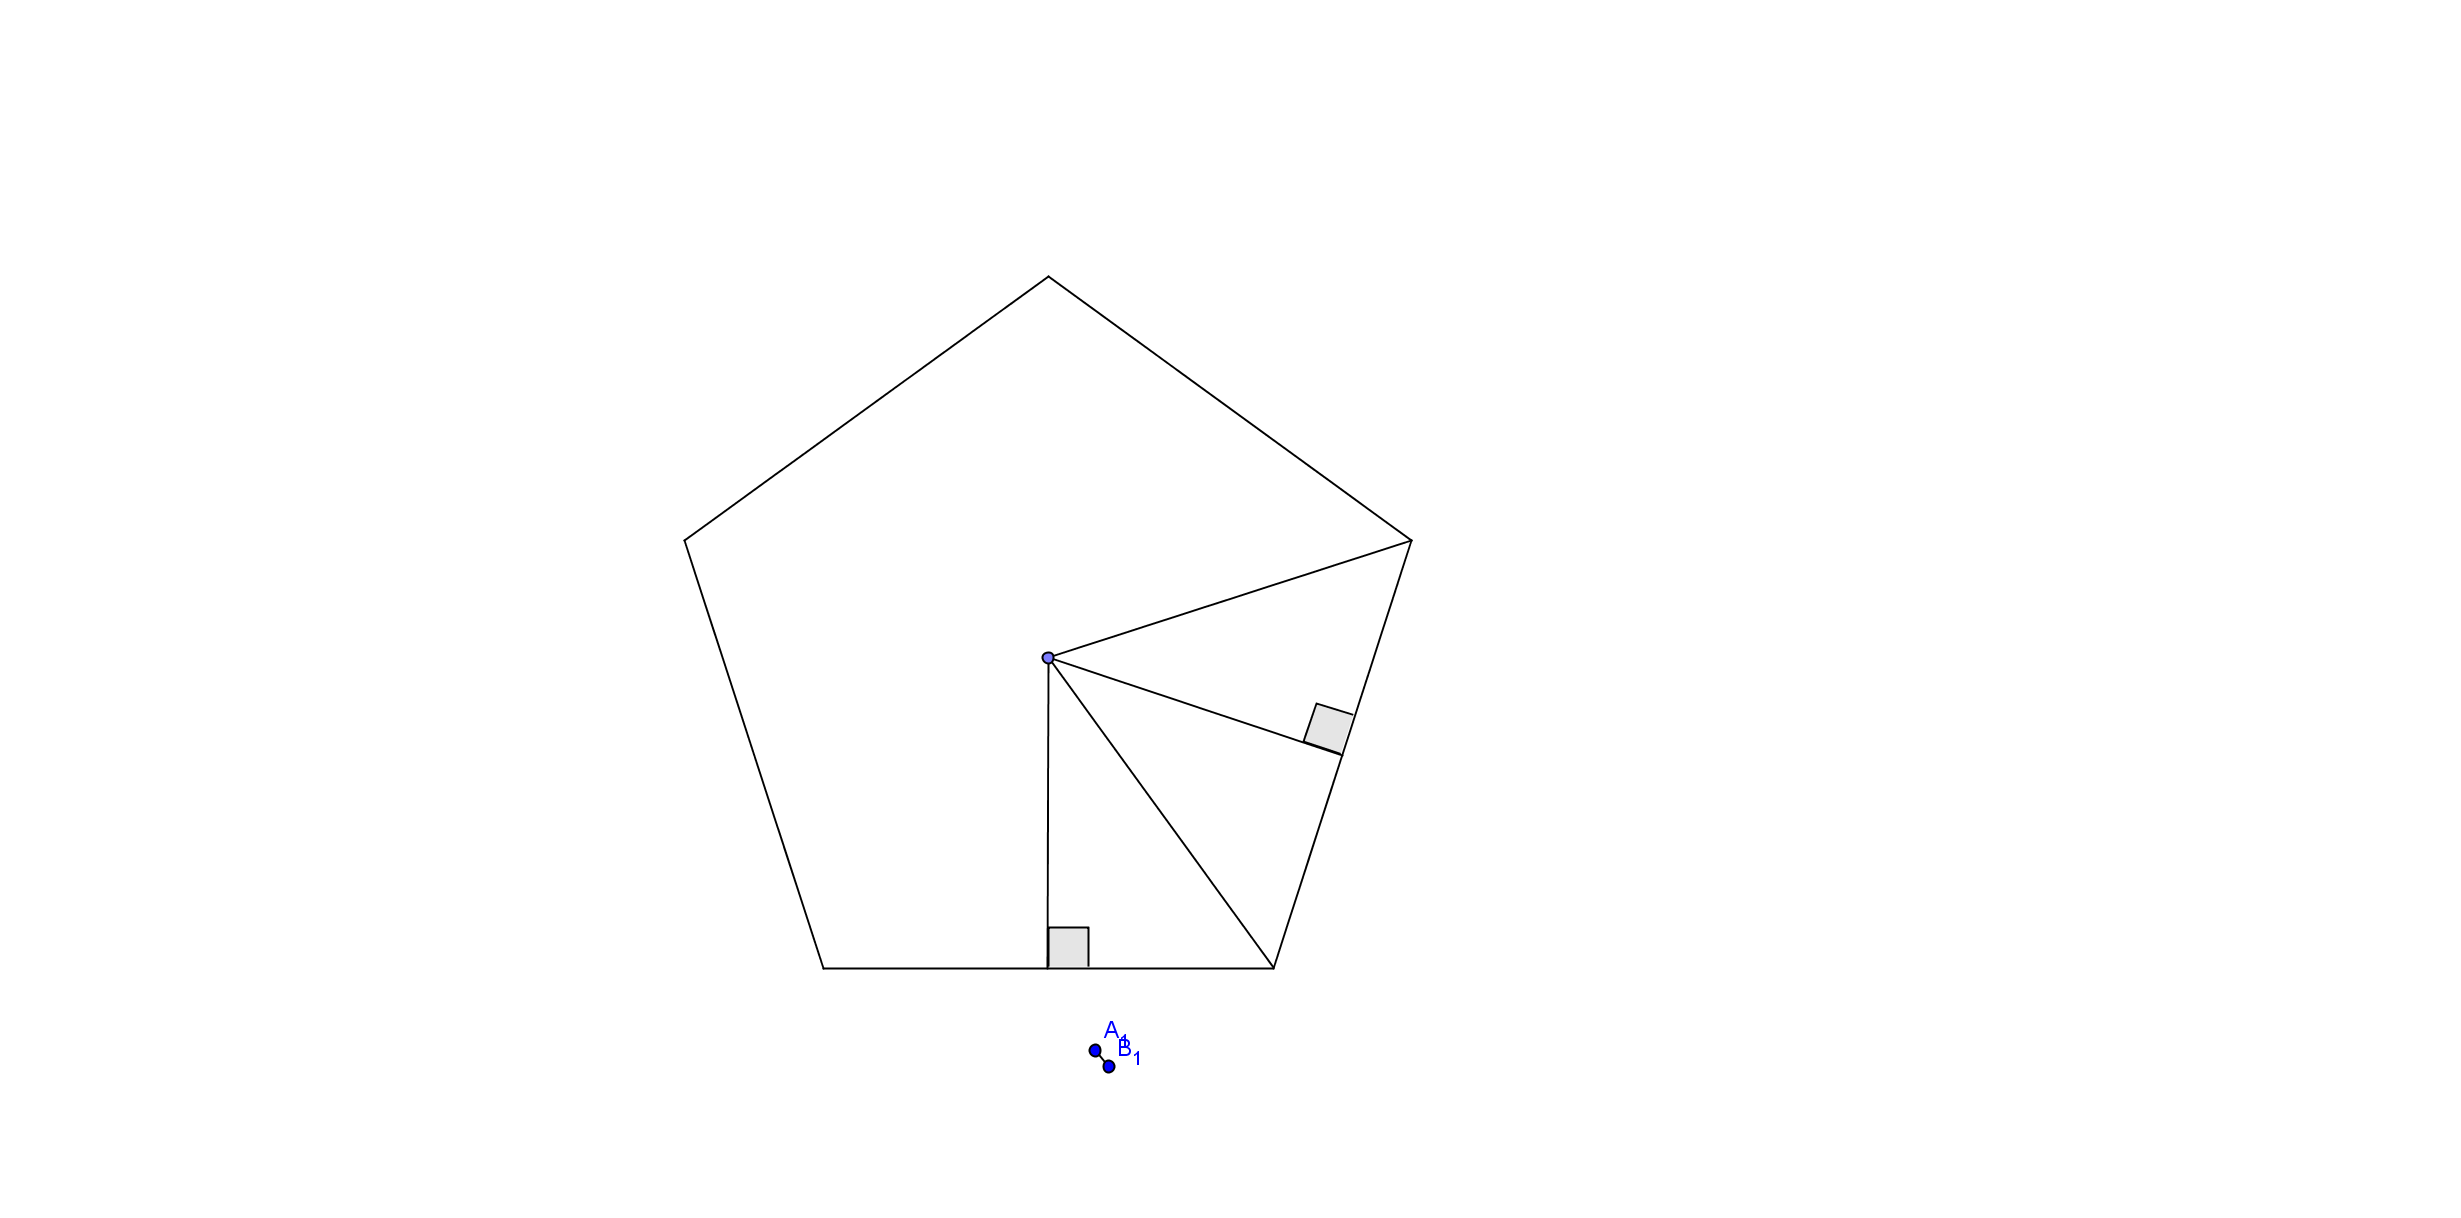 Oppgave 14 (1,5 poeng) Nedenfor ser du en skisse av en femkant (pentagon) med like lange sider.